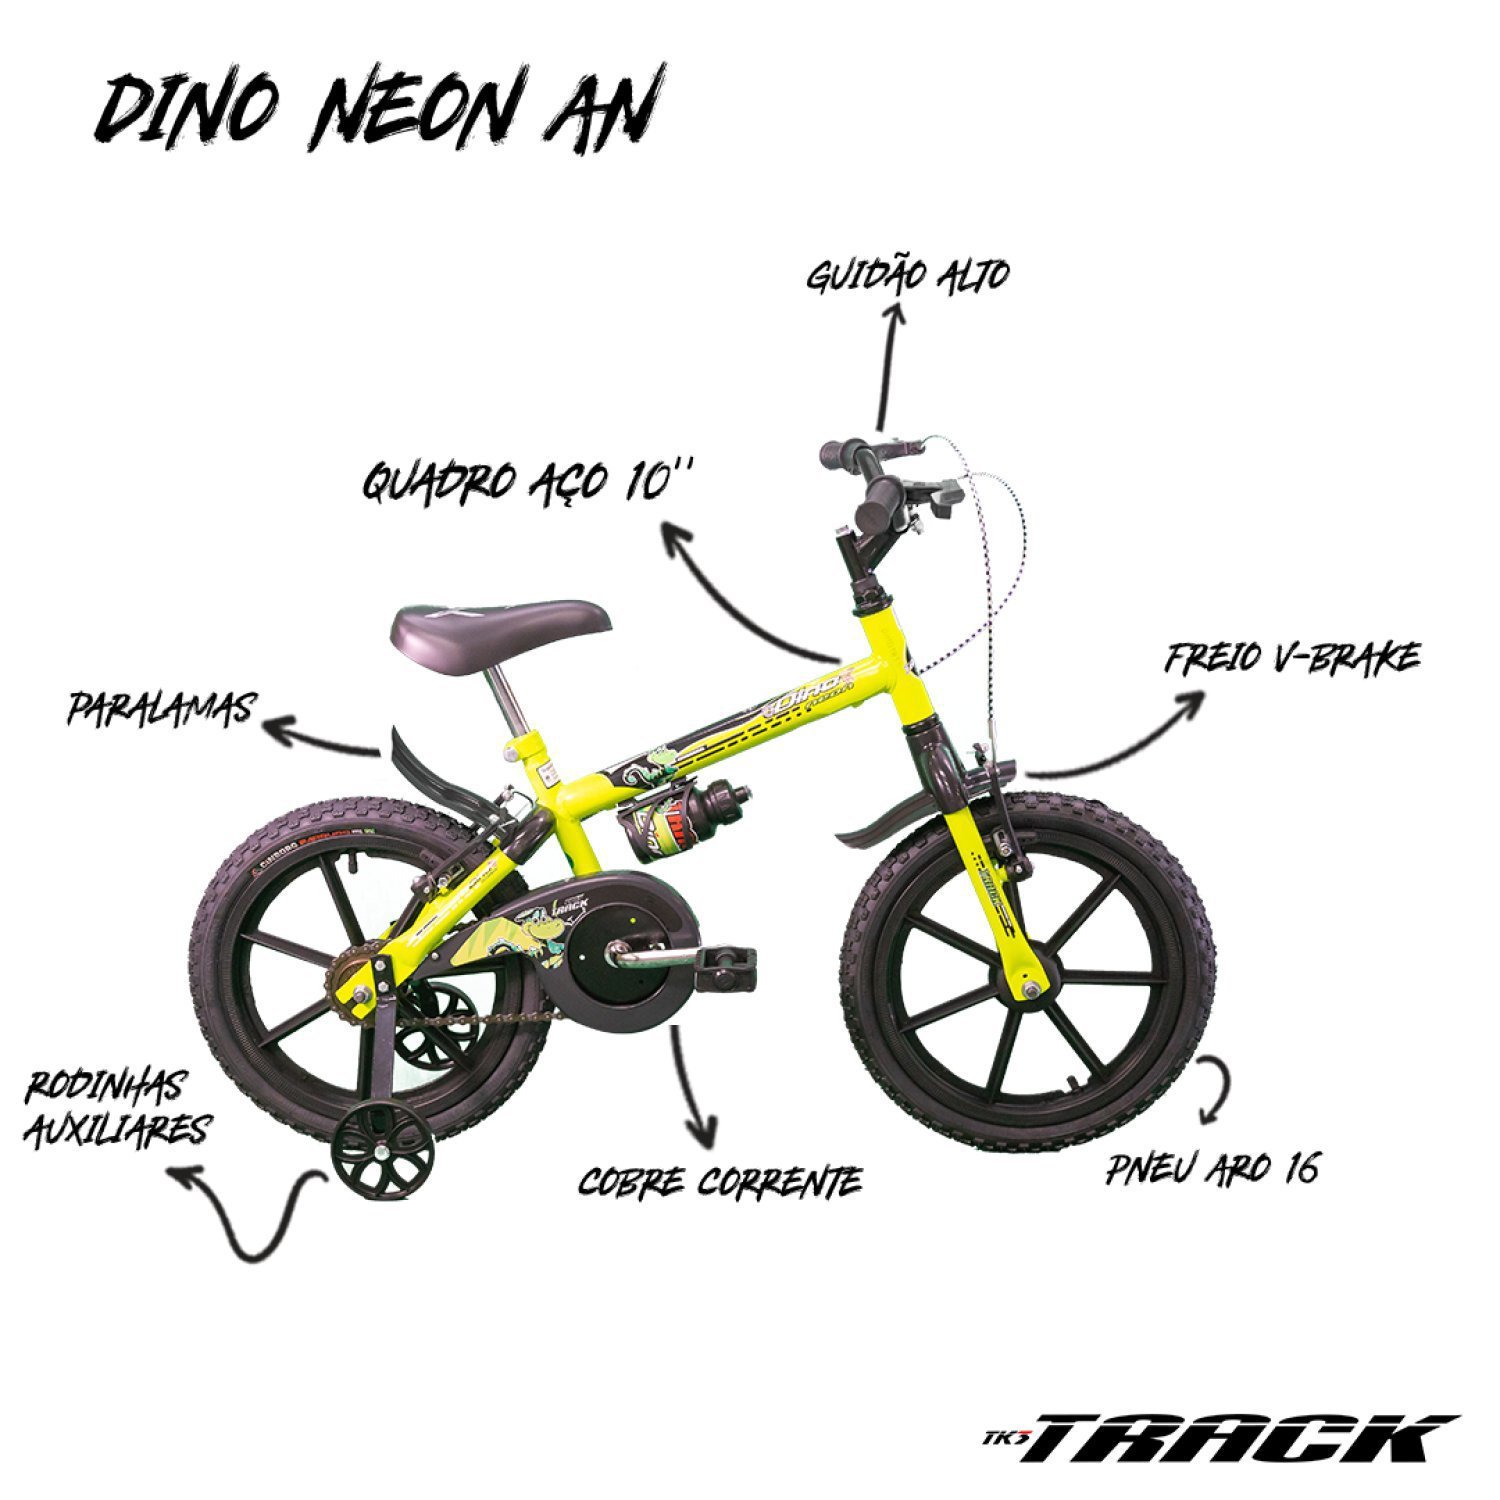 Bicicleta Infantil Dino Neon A16 com Garrafinha TK3 Track - 2